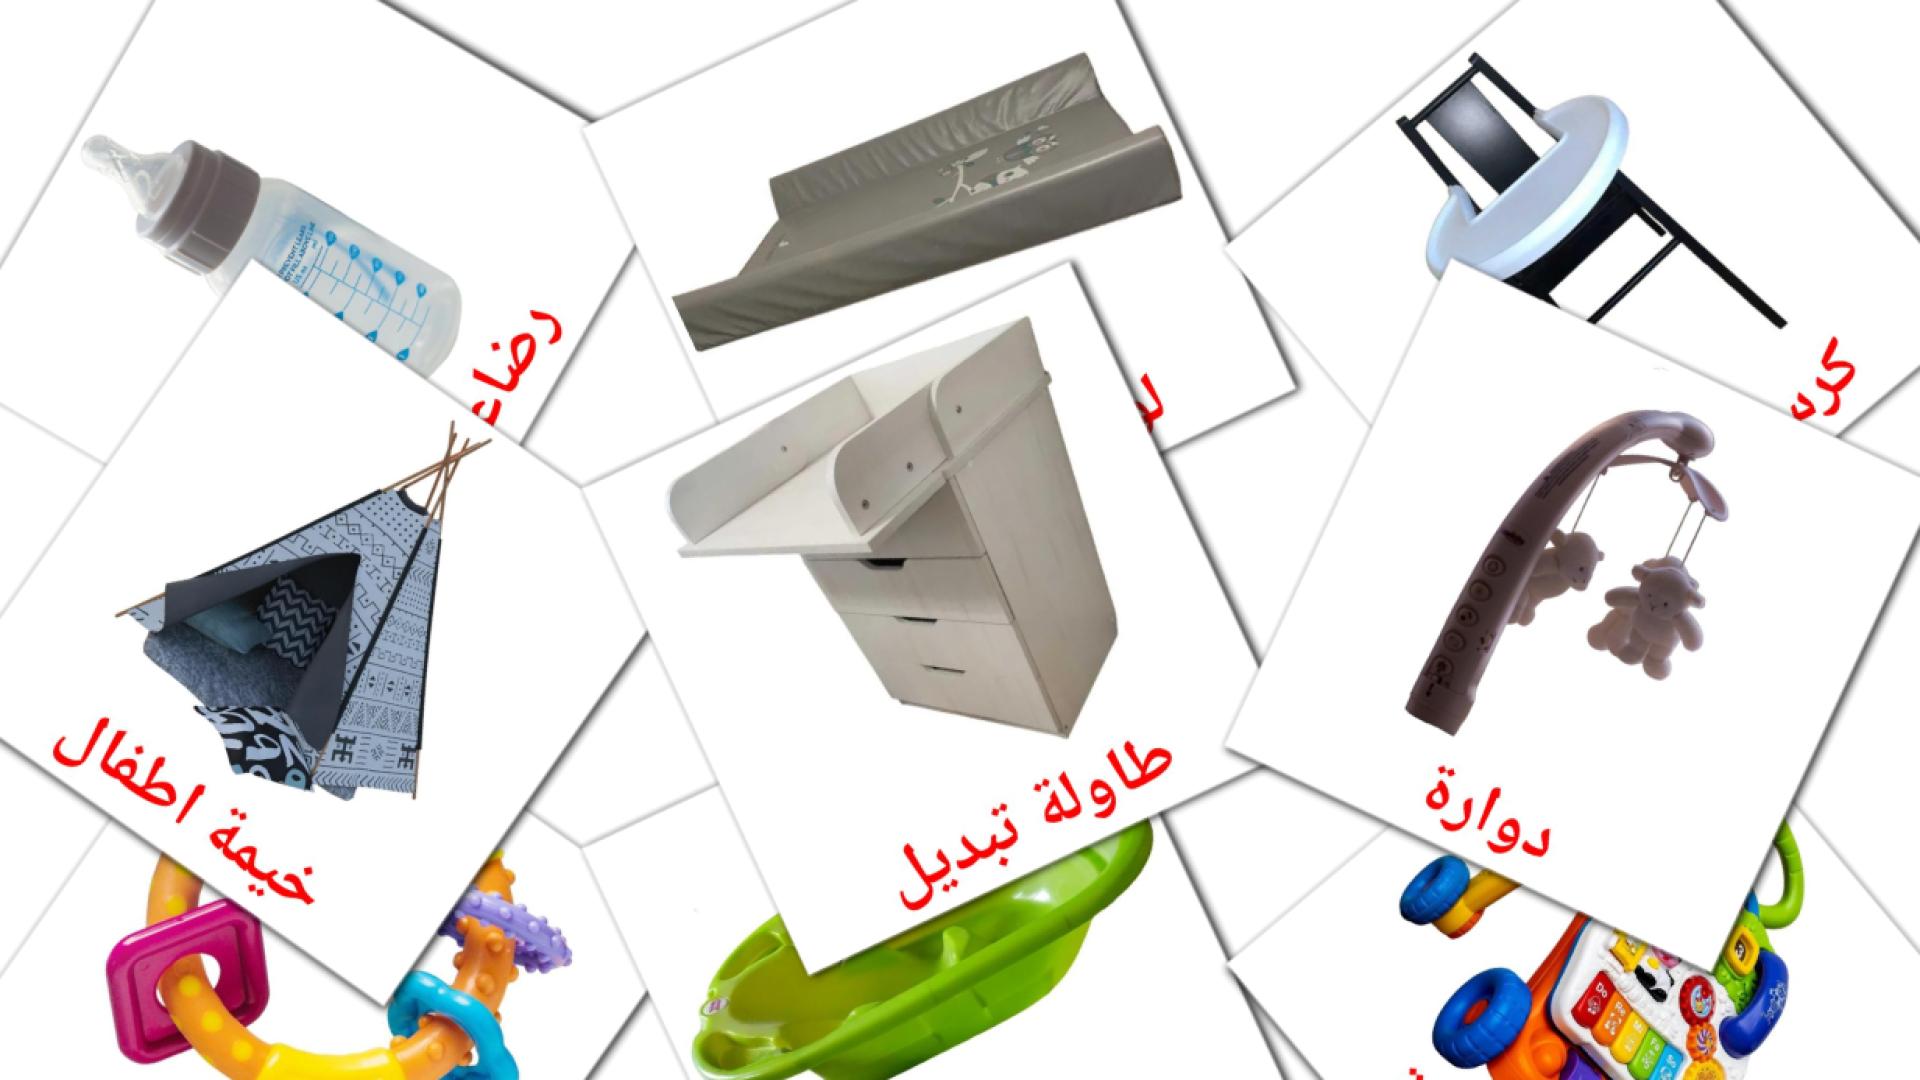 Cose da bambini - Schede di vocabolario arabo